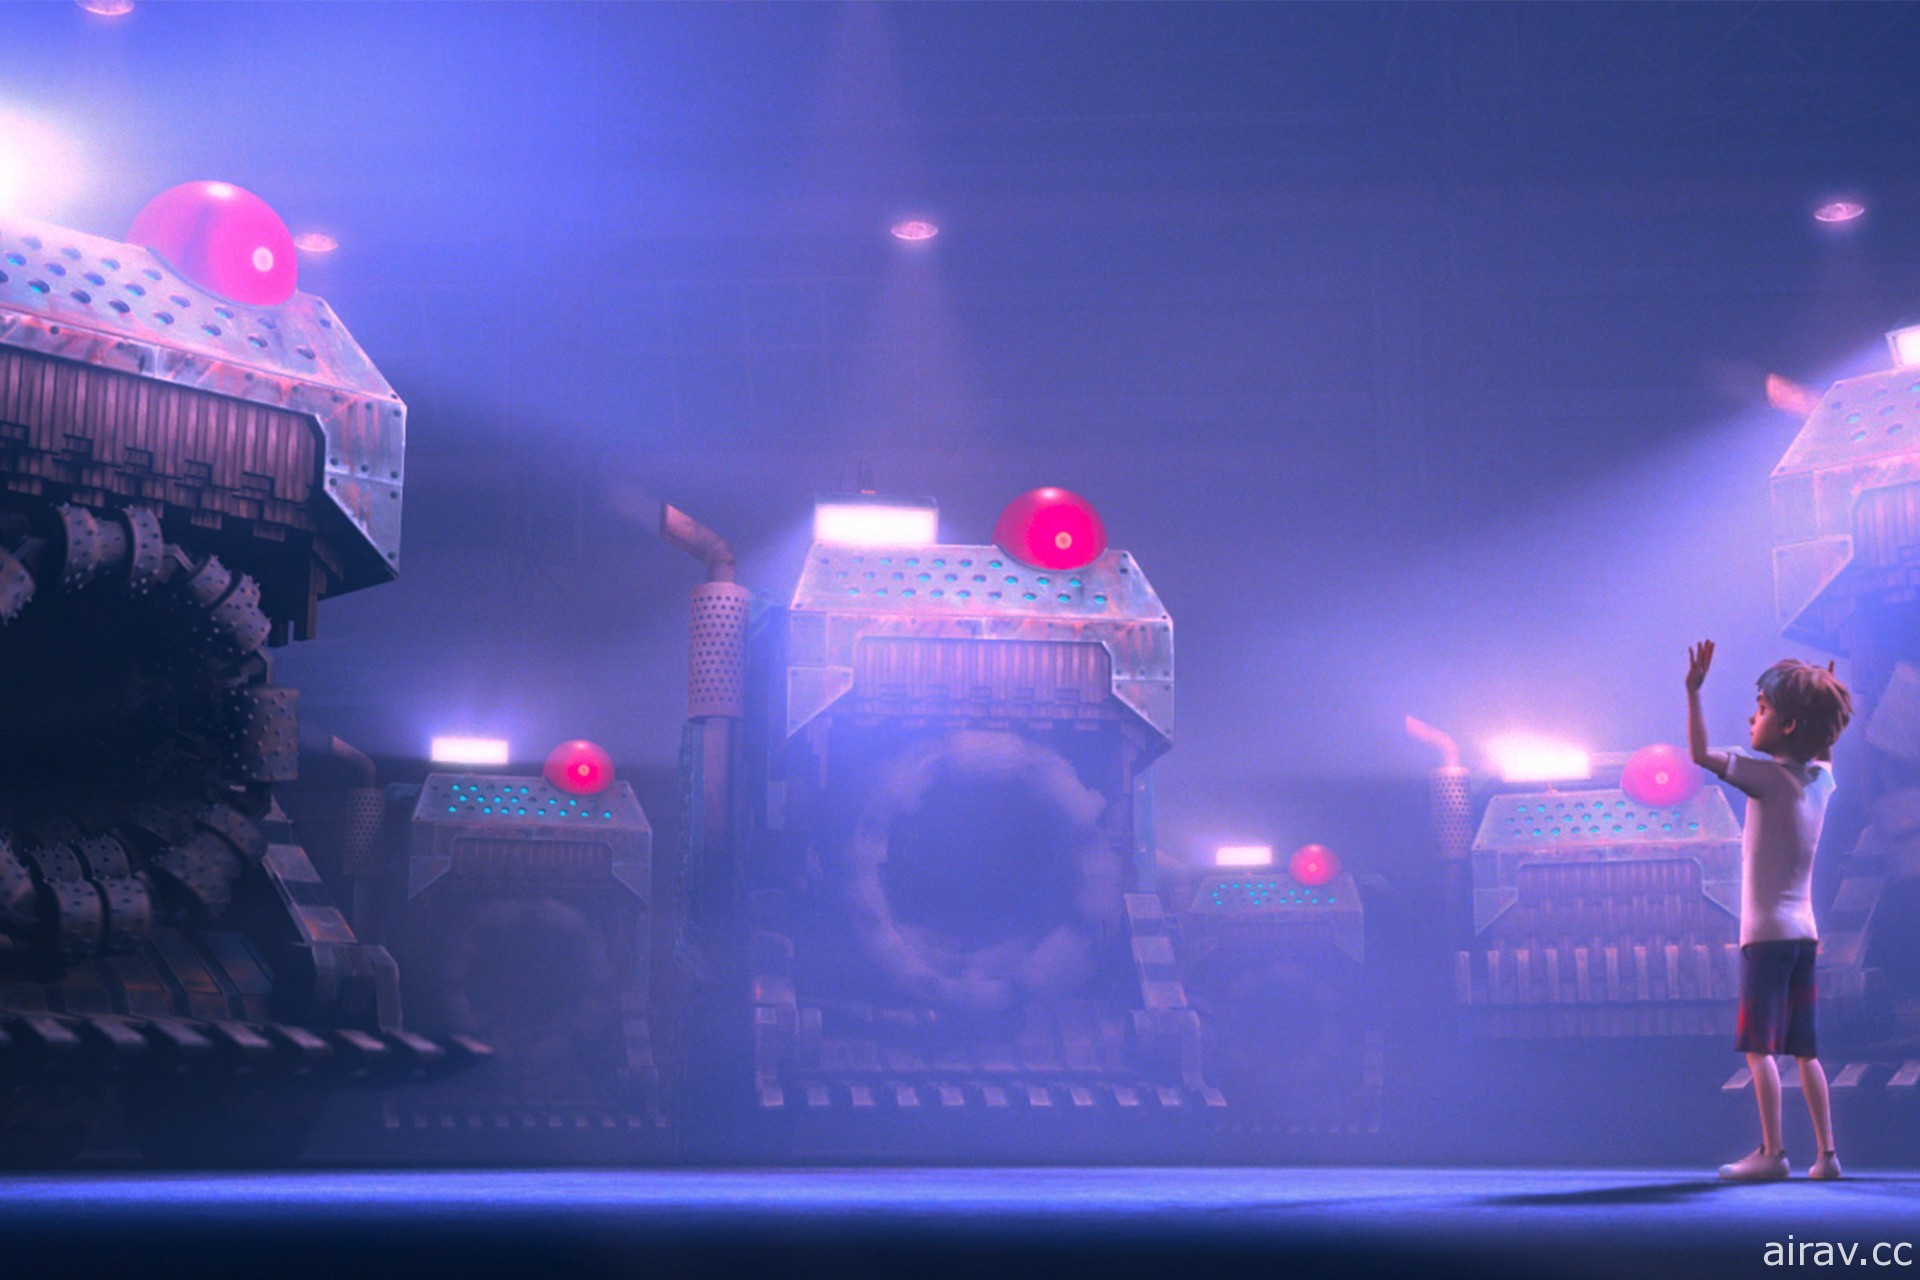 《廢棄之城》釋出正式預告影片 持修獻聲演唱電影主題曲